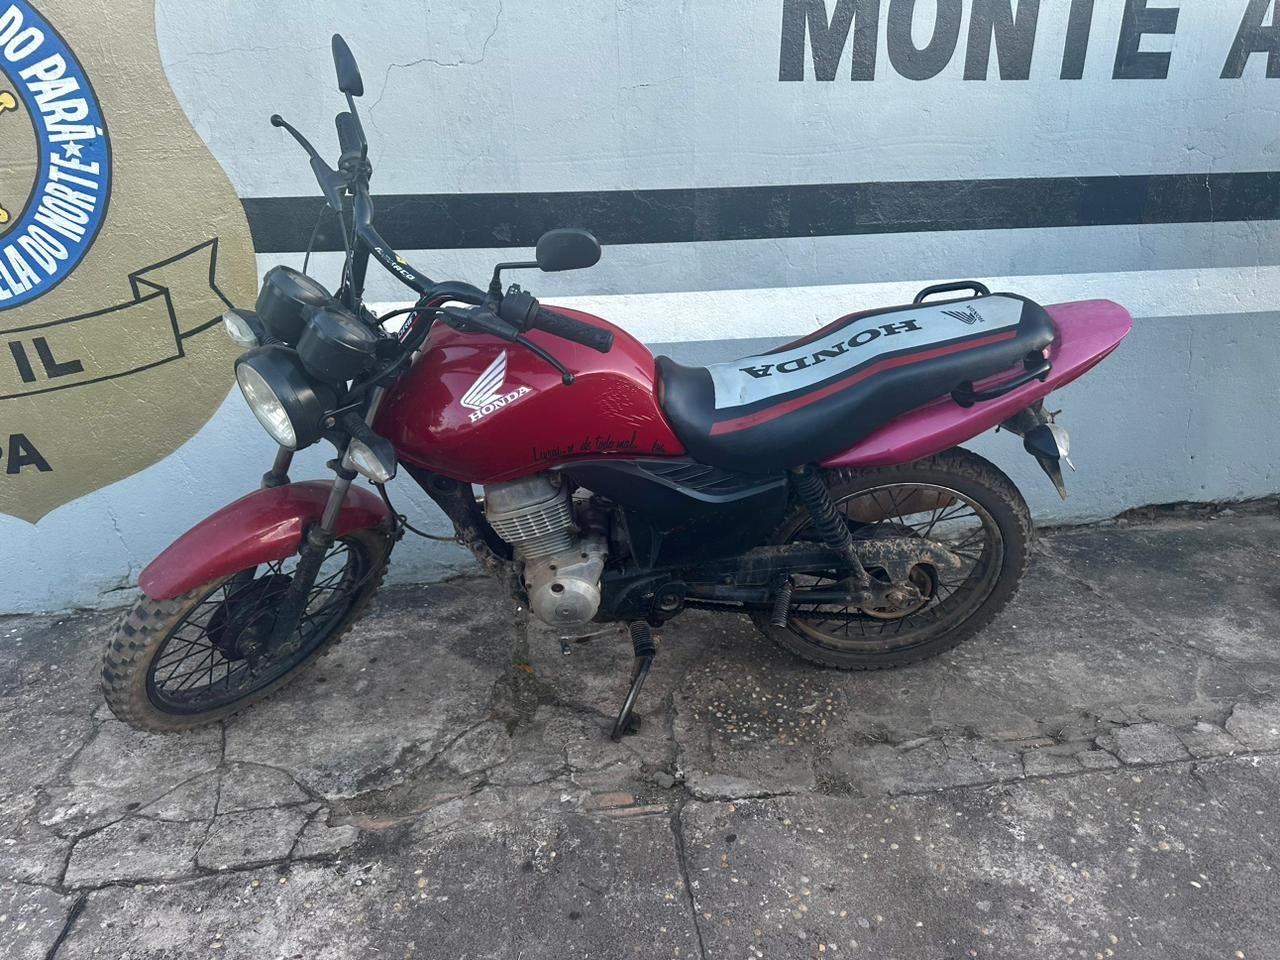 Motocicleta com registro de furto é recuperada em Monte Alegre durante barreira policial